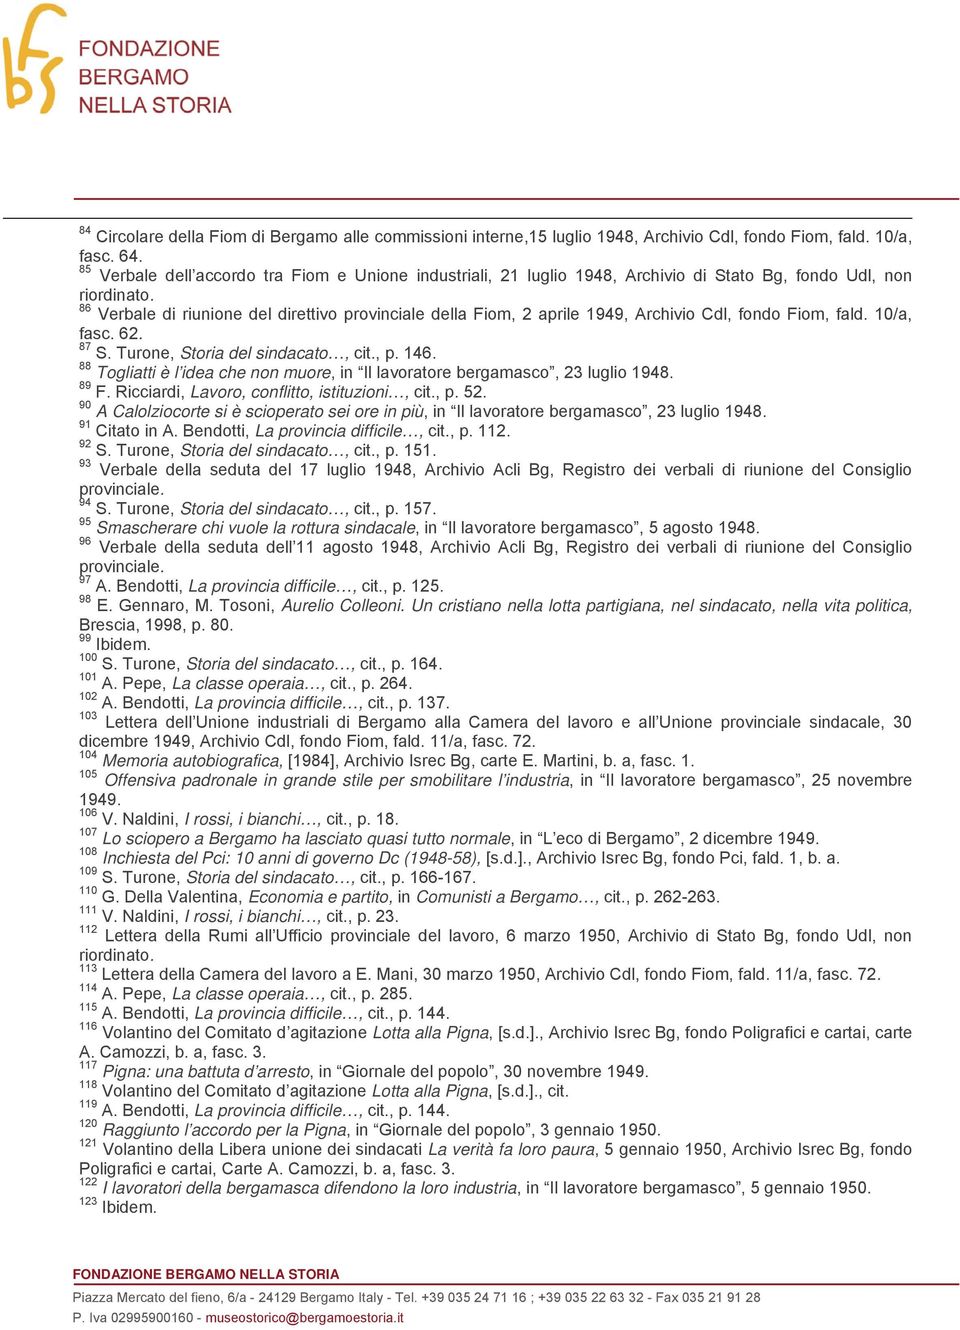 86 Verbale di riunione del direttivo provinciale della Fiom, 2 aprile 1949, Archivio Cdl, fondo Fiom, fald. 10/a, fasc. 62. 87 S. Turone, Storia del sindacato, cit., p. 146.